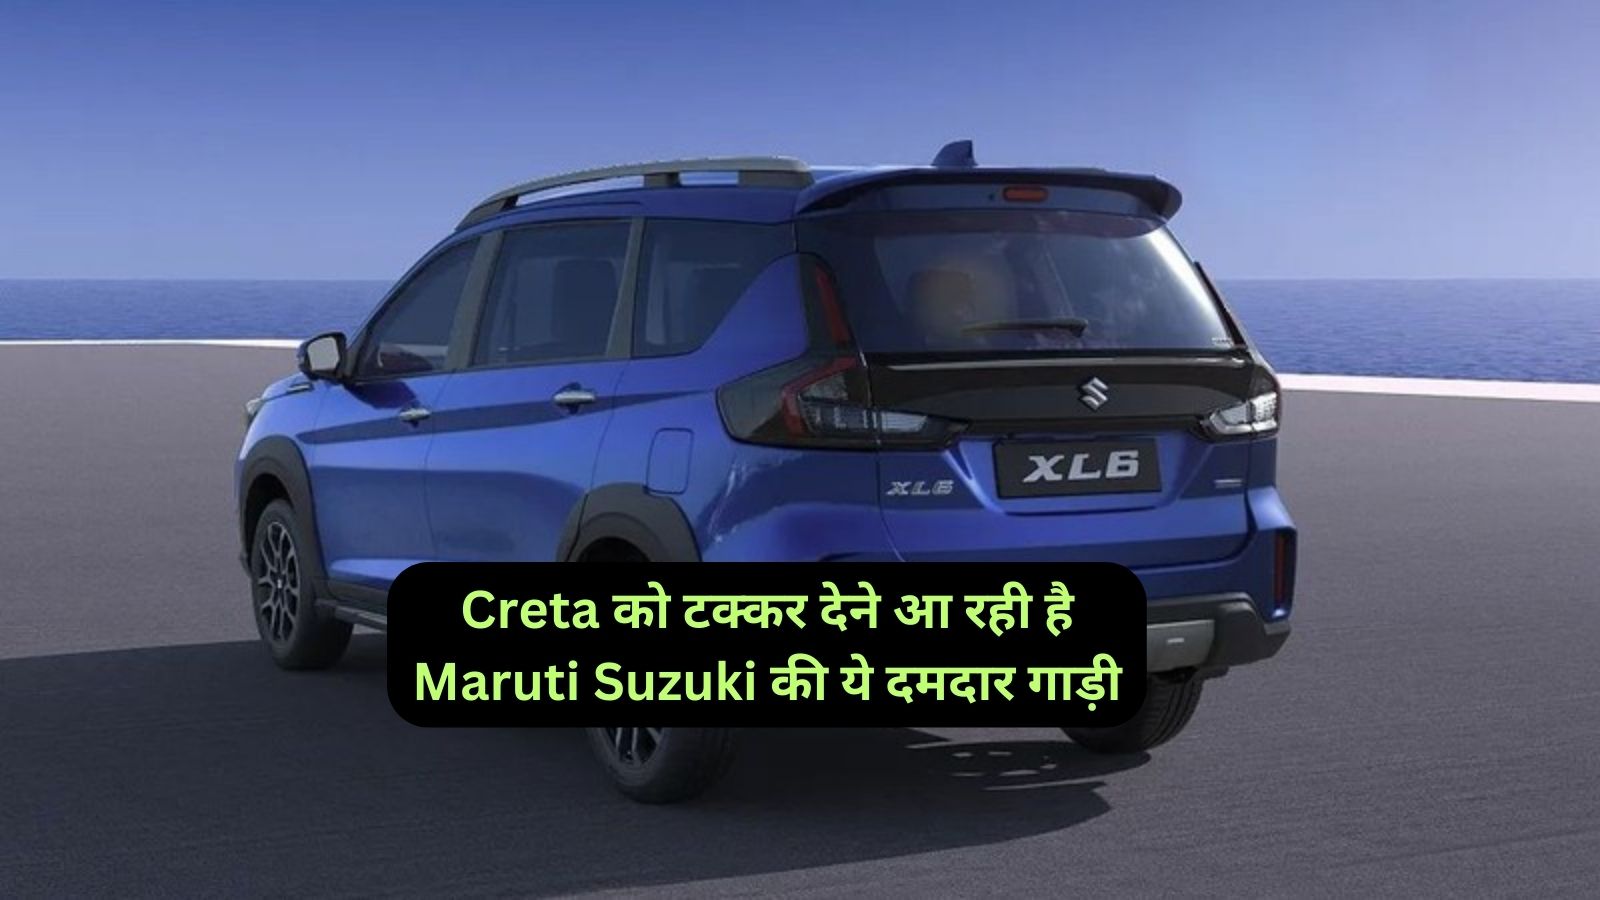 Maruti Suzuki XL6: Creta को टक्कर देने आ रही है Maruti Suzuki की ये दमदार गाड़ी,जानिए इसके दमदार माइलेज और कीमत के बारे मे